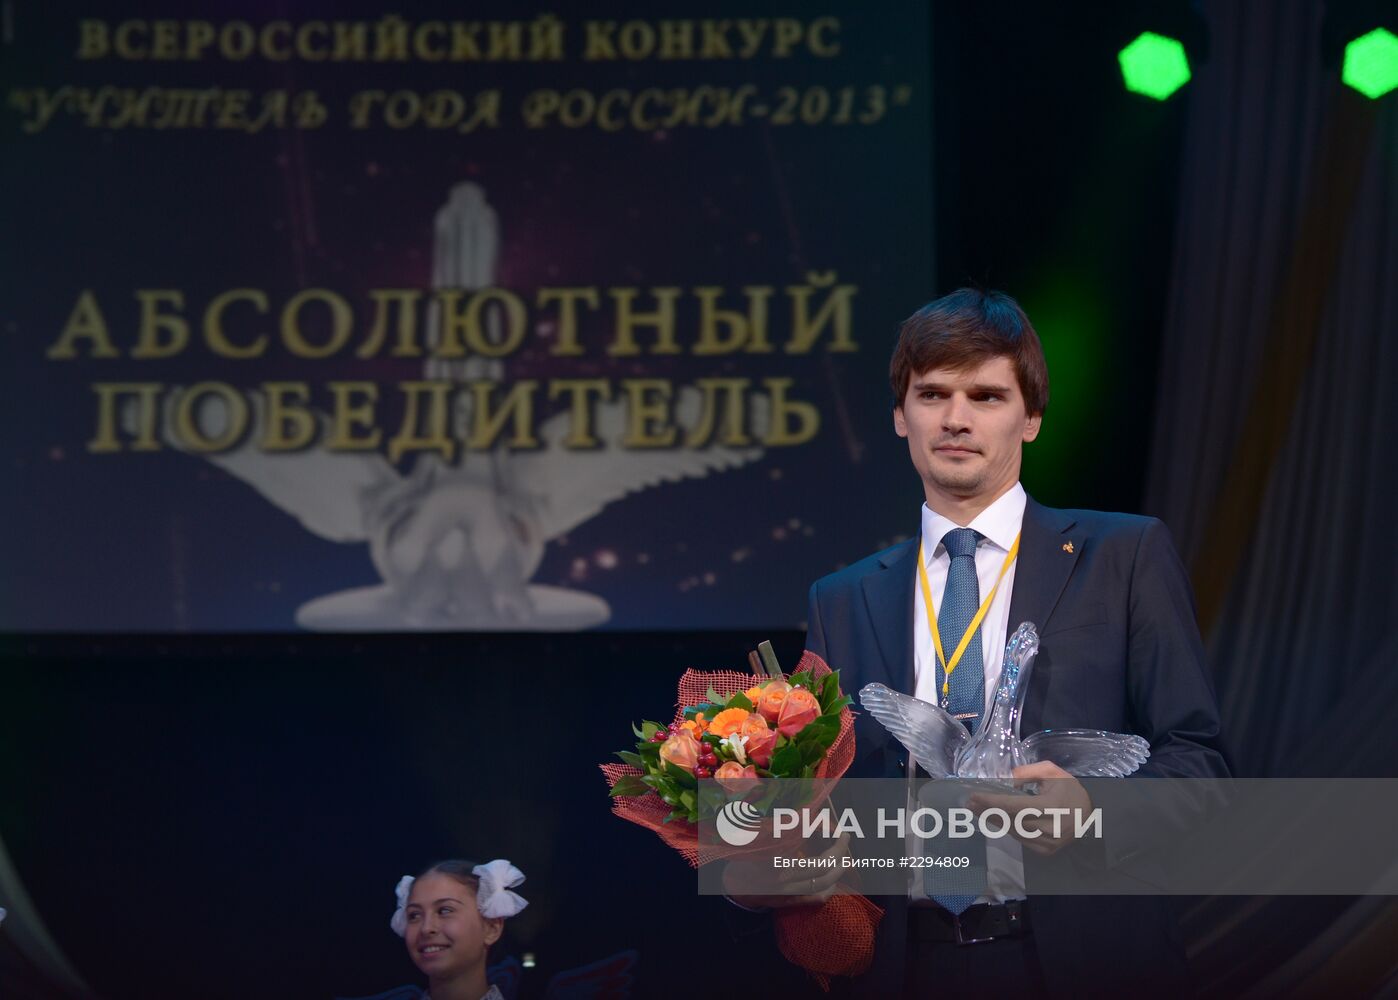 Награждение победителя конкурса "Учитель года России–2013"